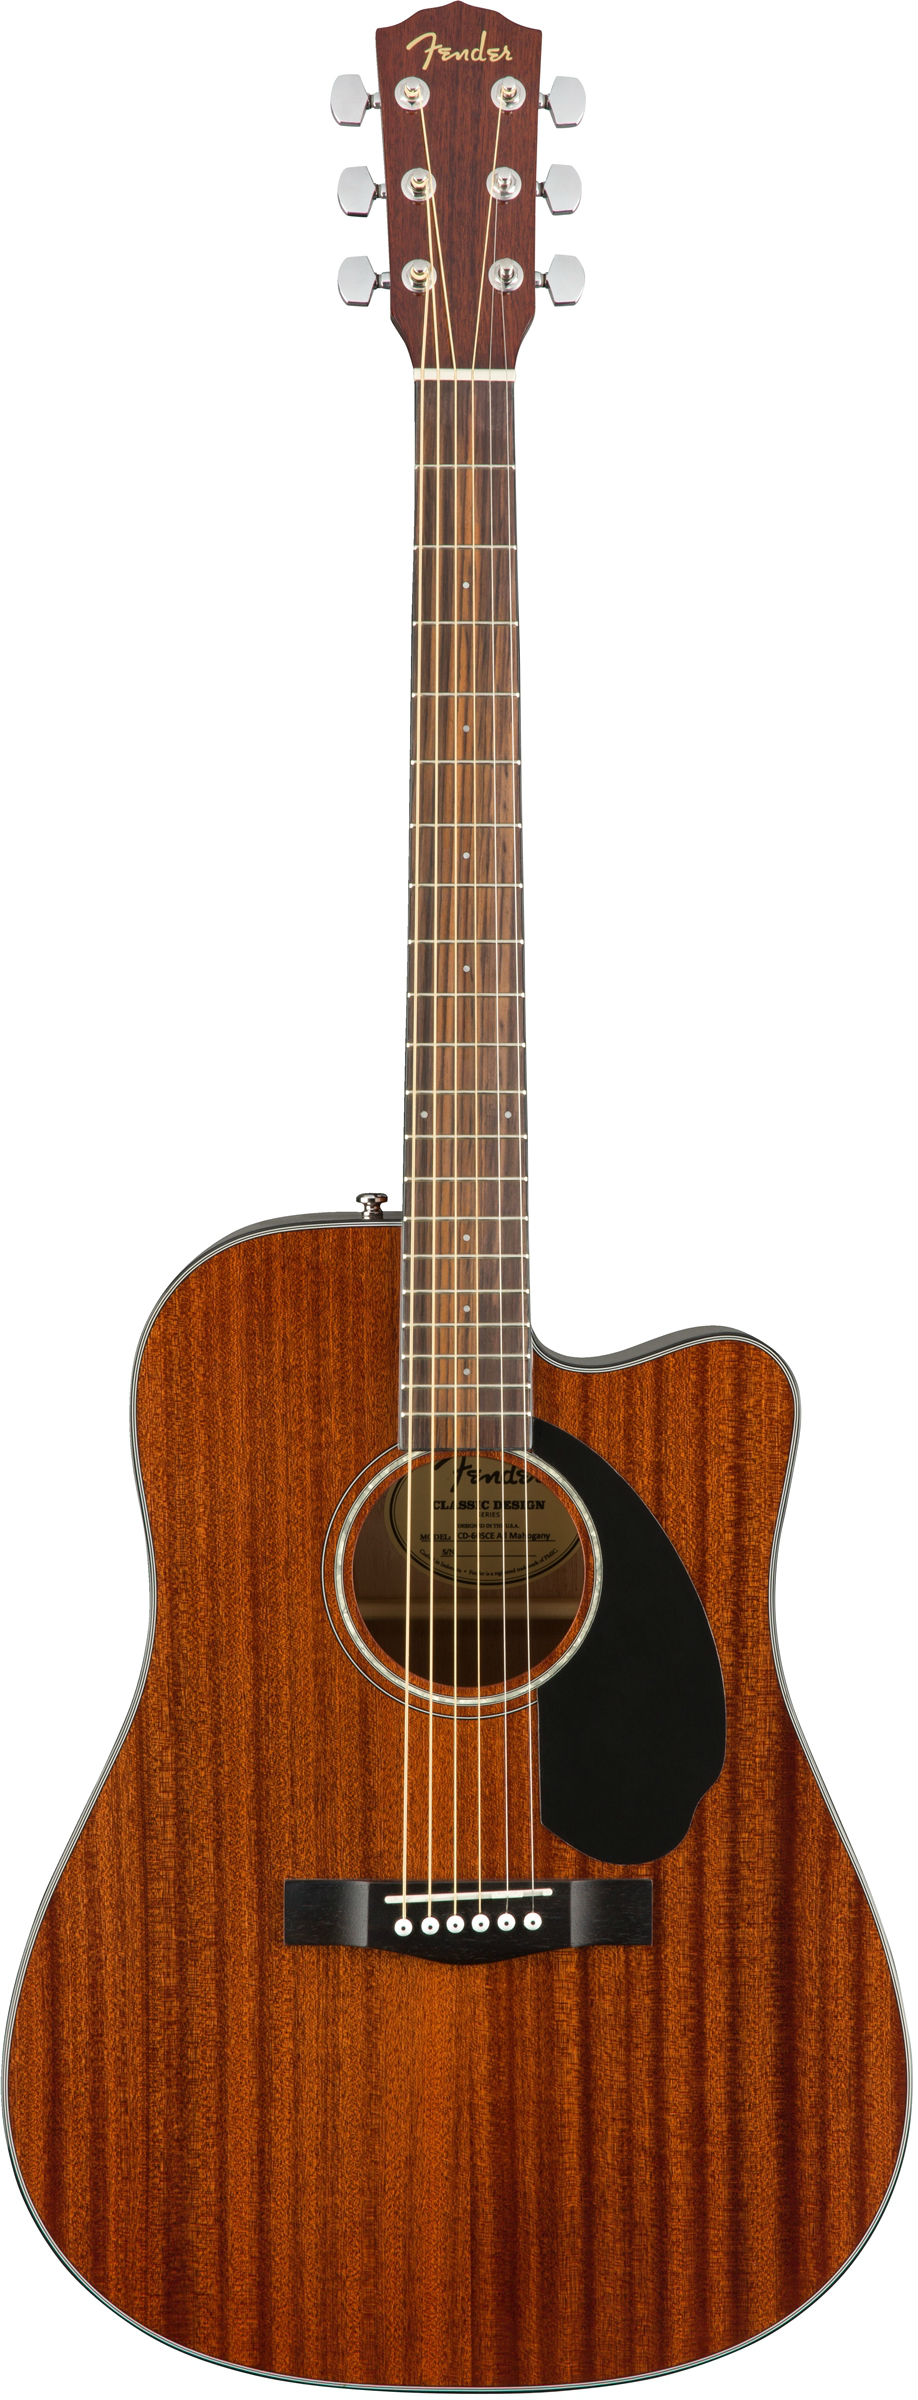 FENDER CD-60SCE ALL MAH электроакустическая гитара, красное дерево, массив, цвет натуральный